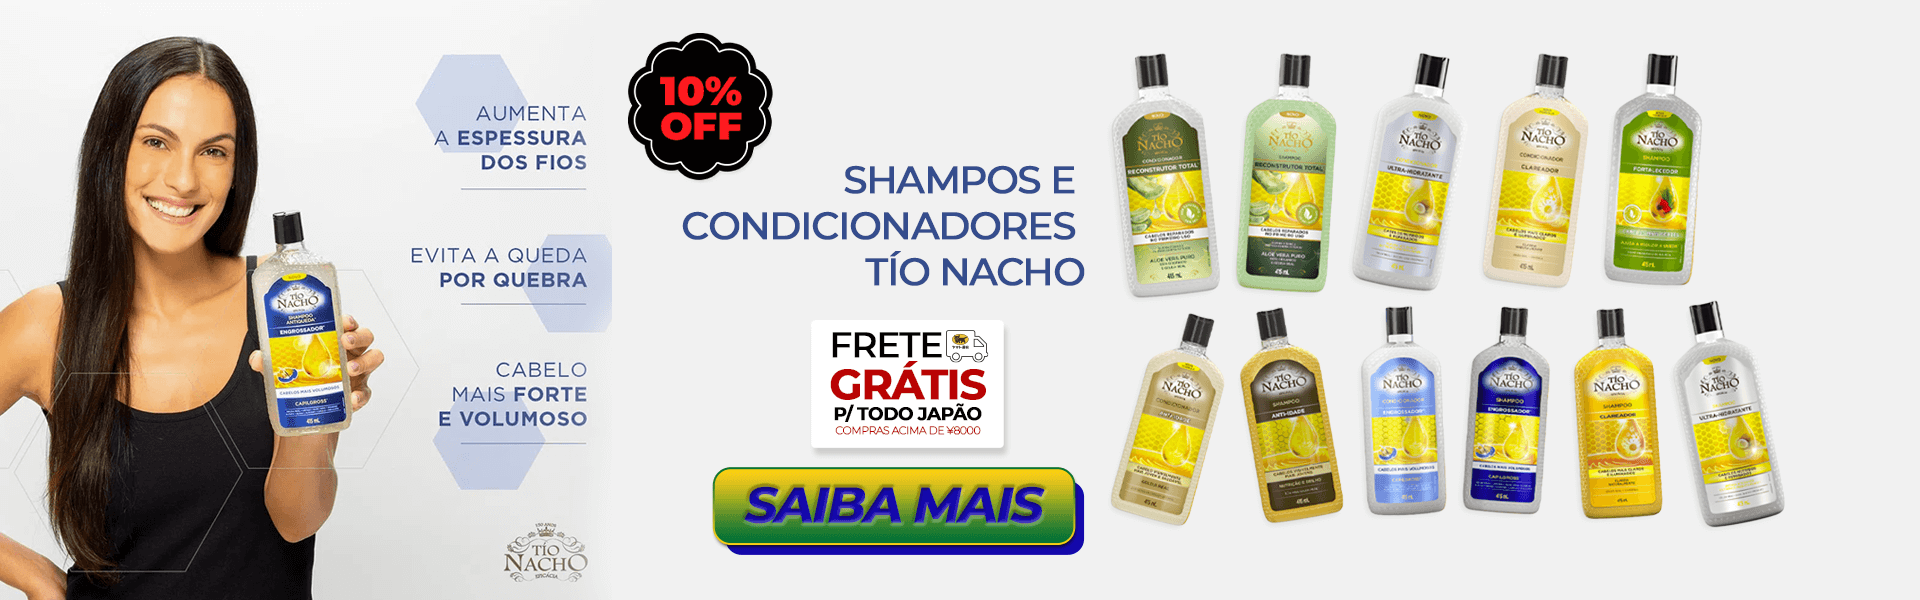 Shampoos e Condicionadores Tío Nacho